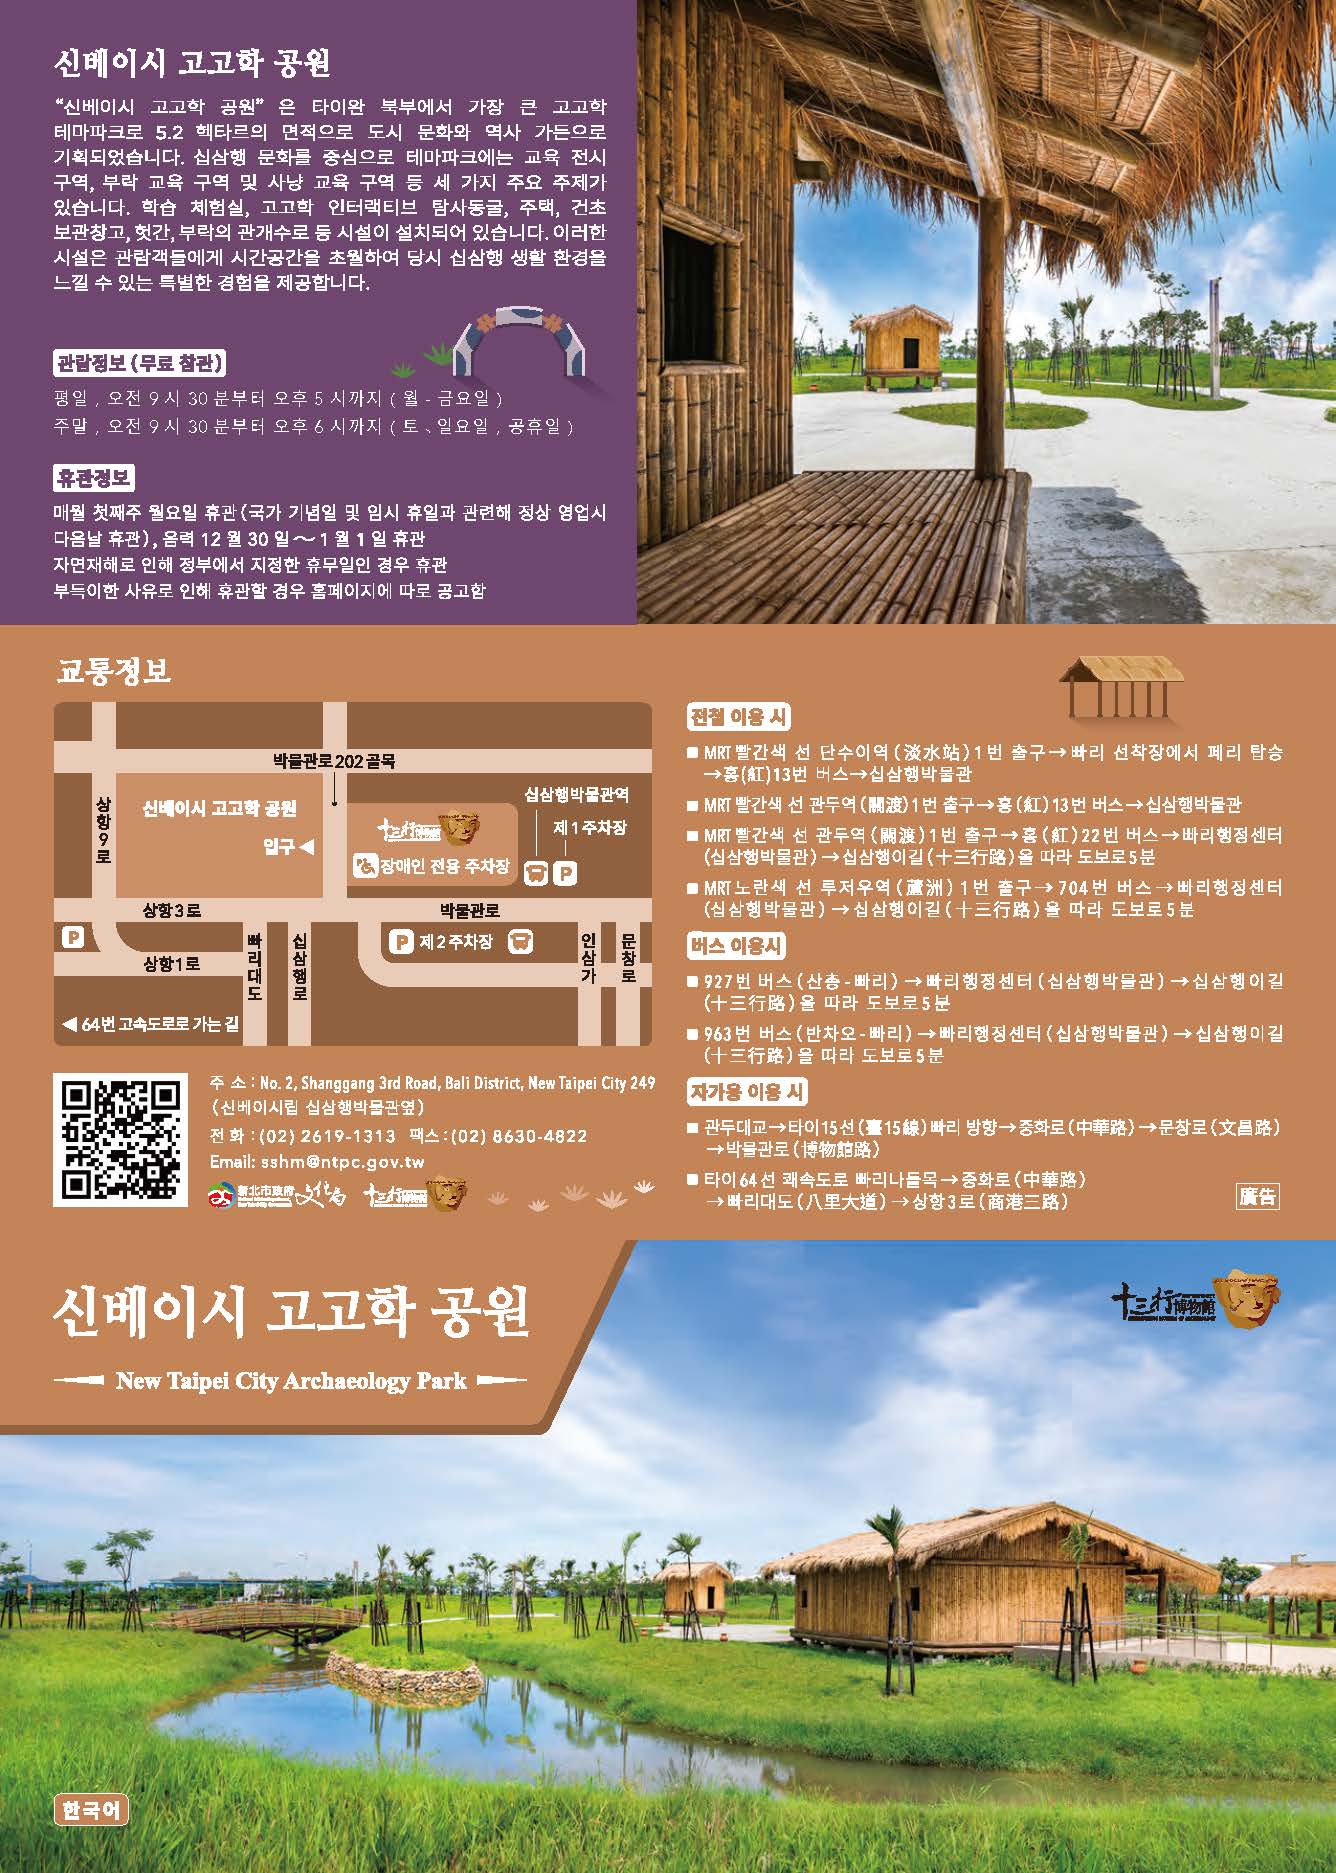 新北考古公園摺頁-韓文1